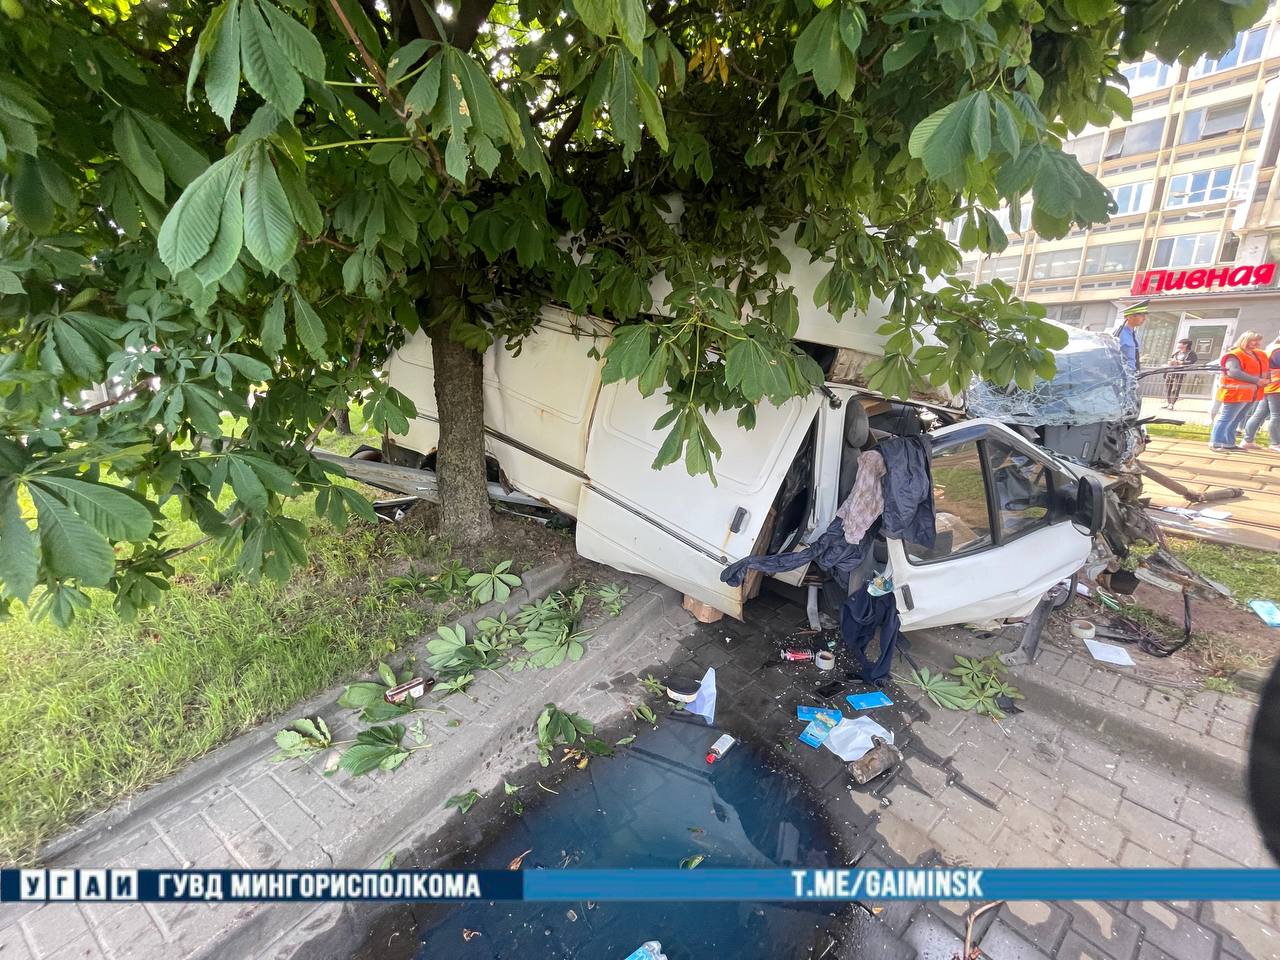 Трамвай и микроавтобус столкнулись в Минске, один человек погиб